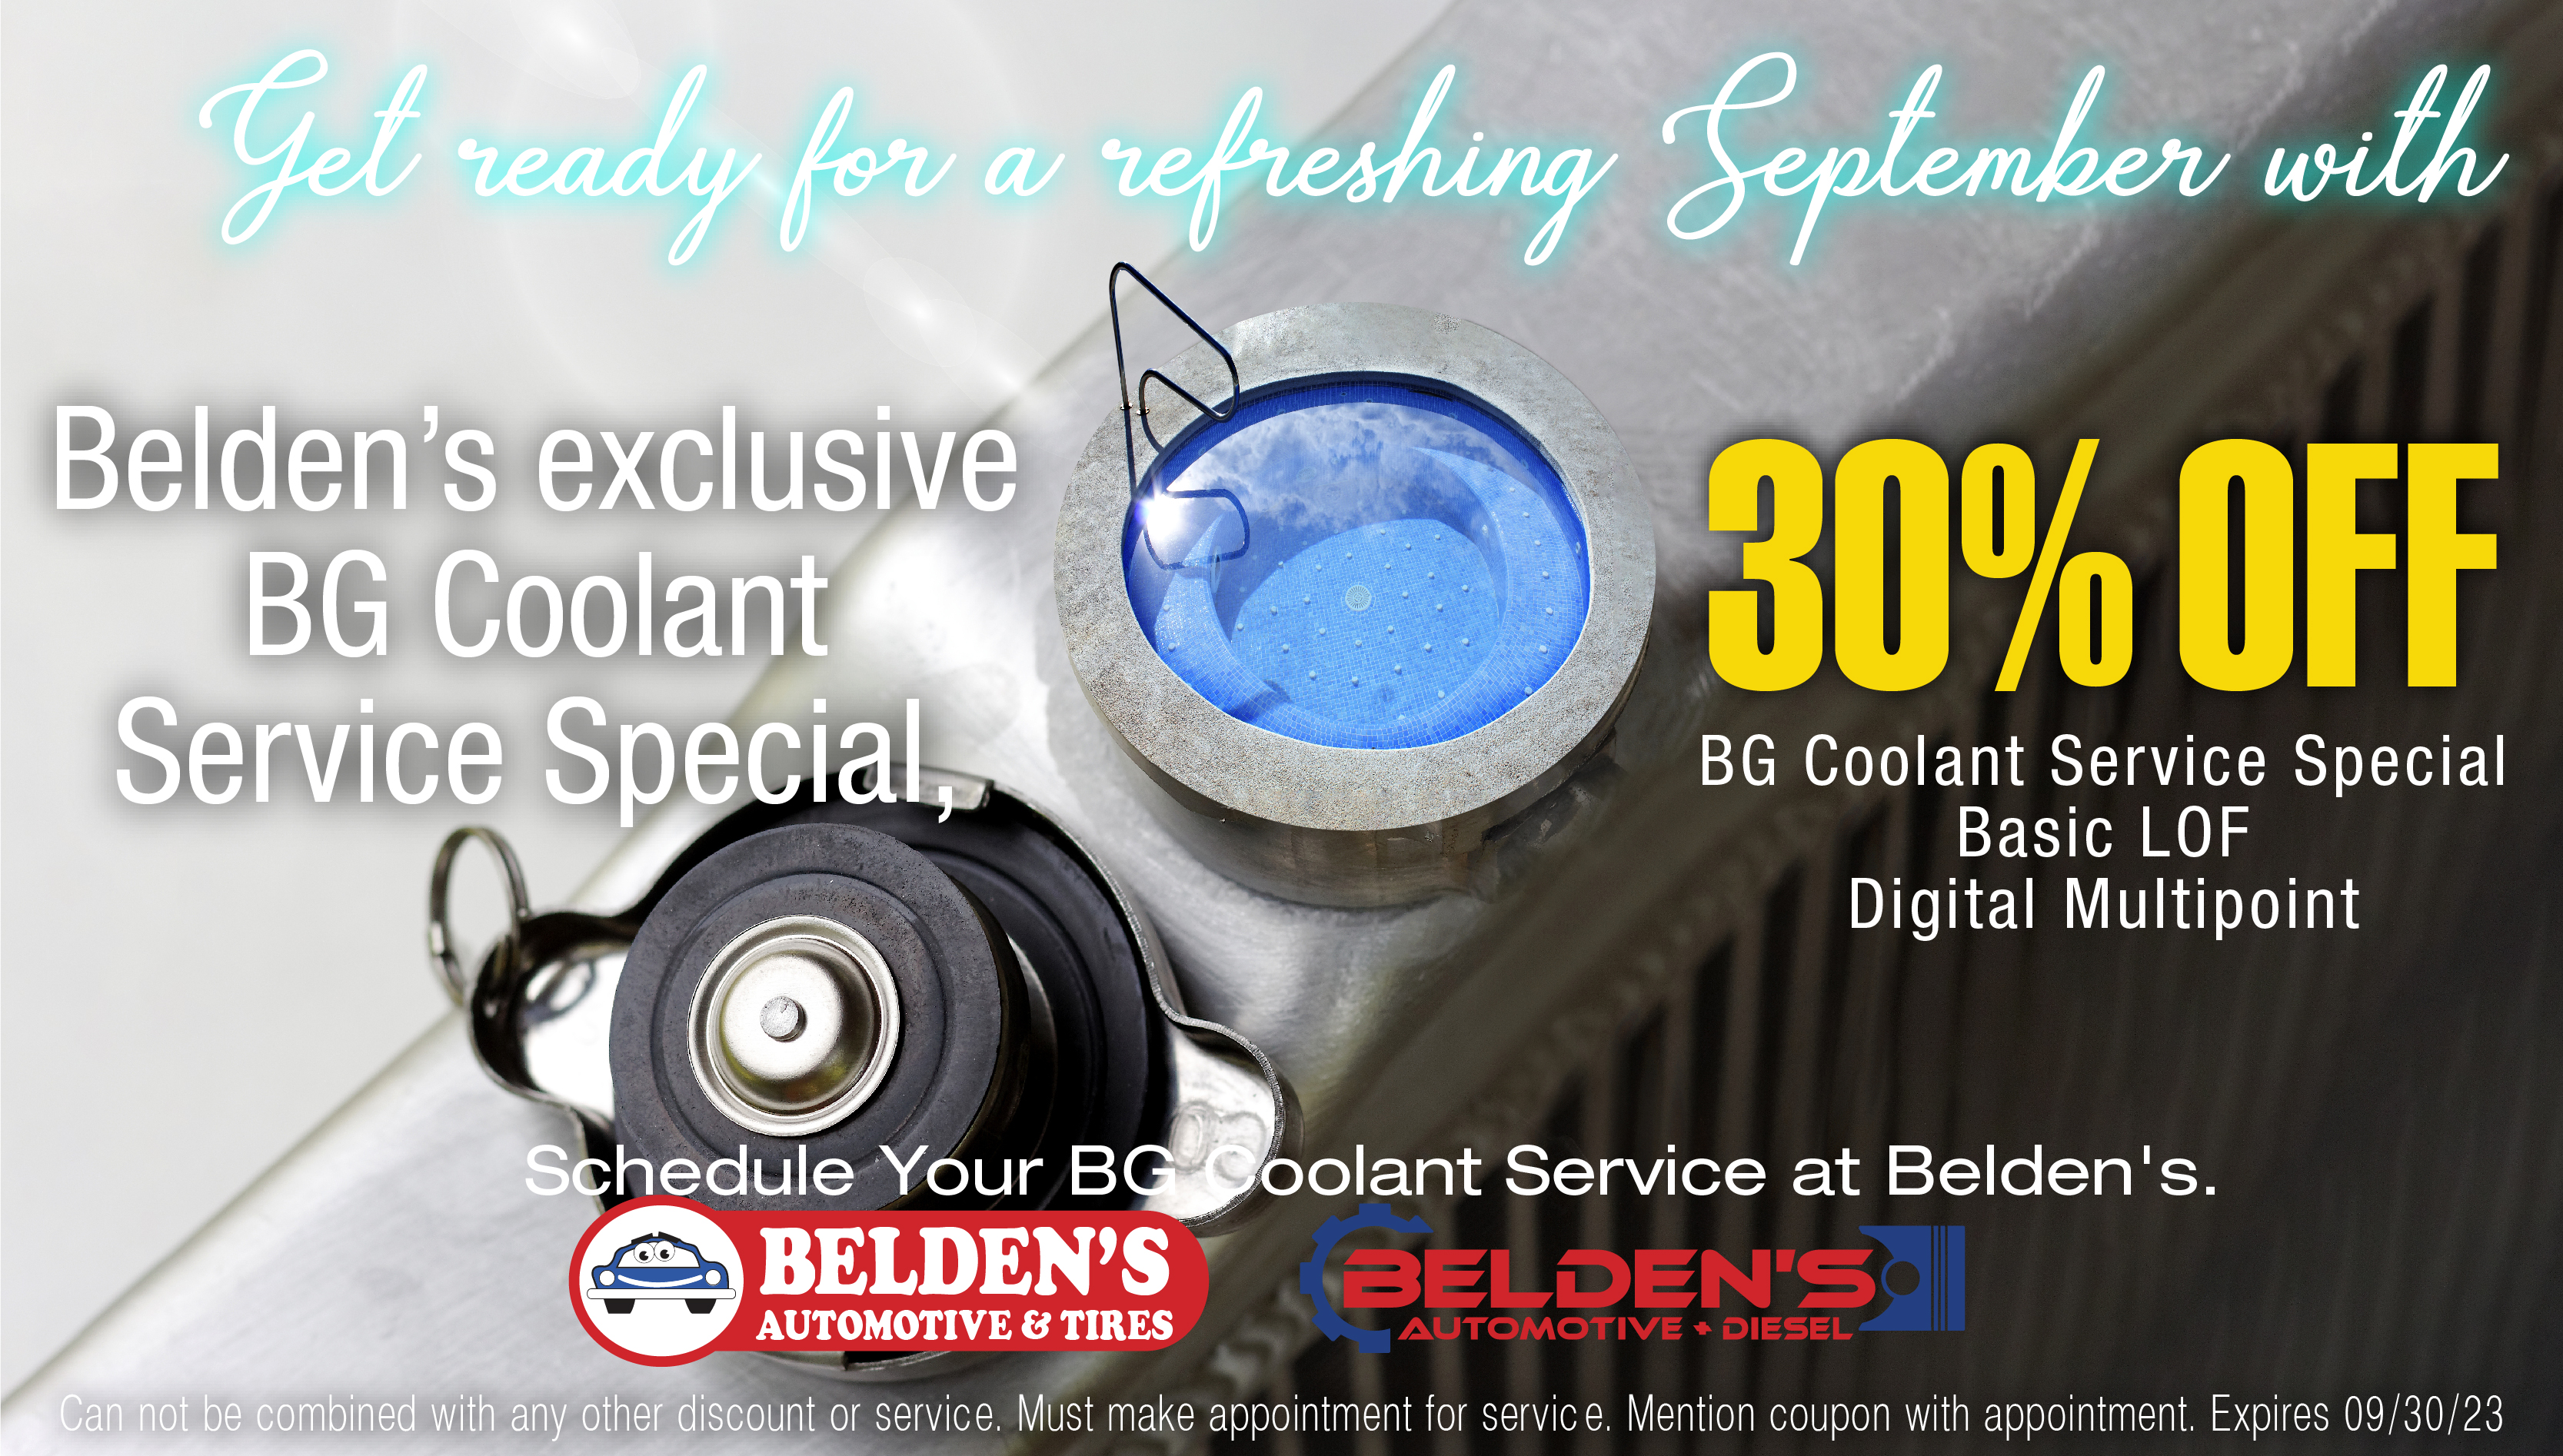 BG Coolant Service Special | Belden's Automotive September Special | Belden's Automotive & Tires